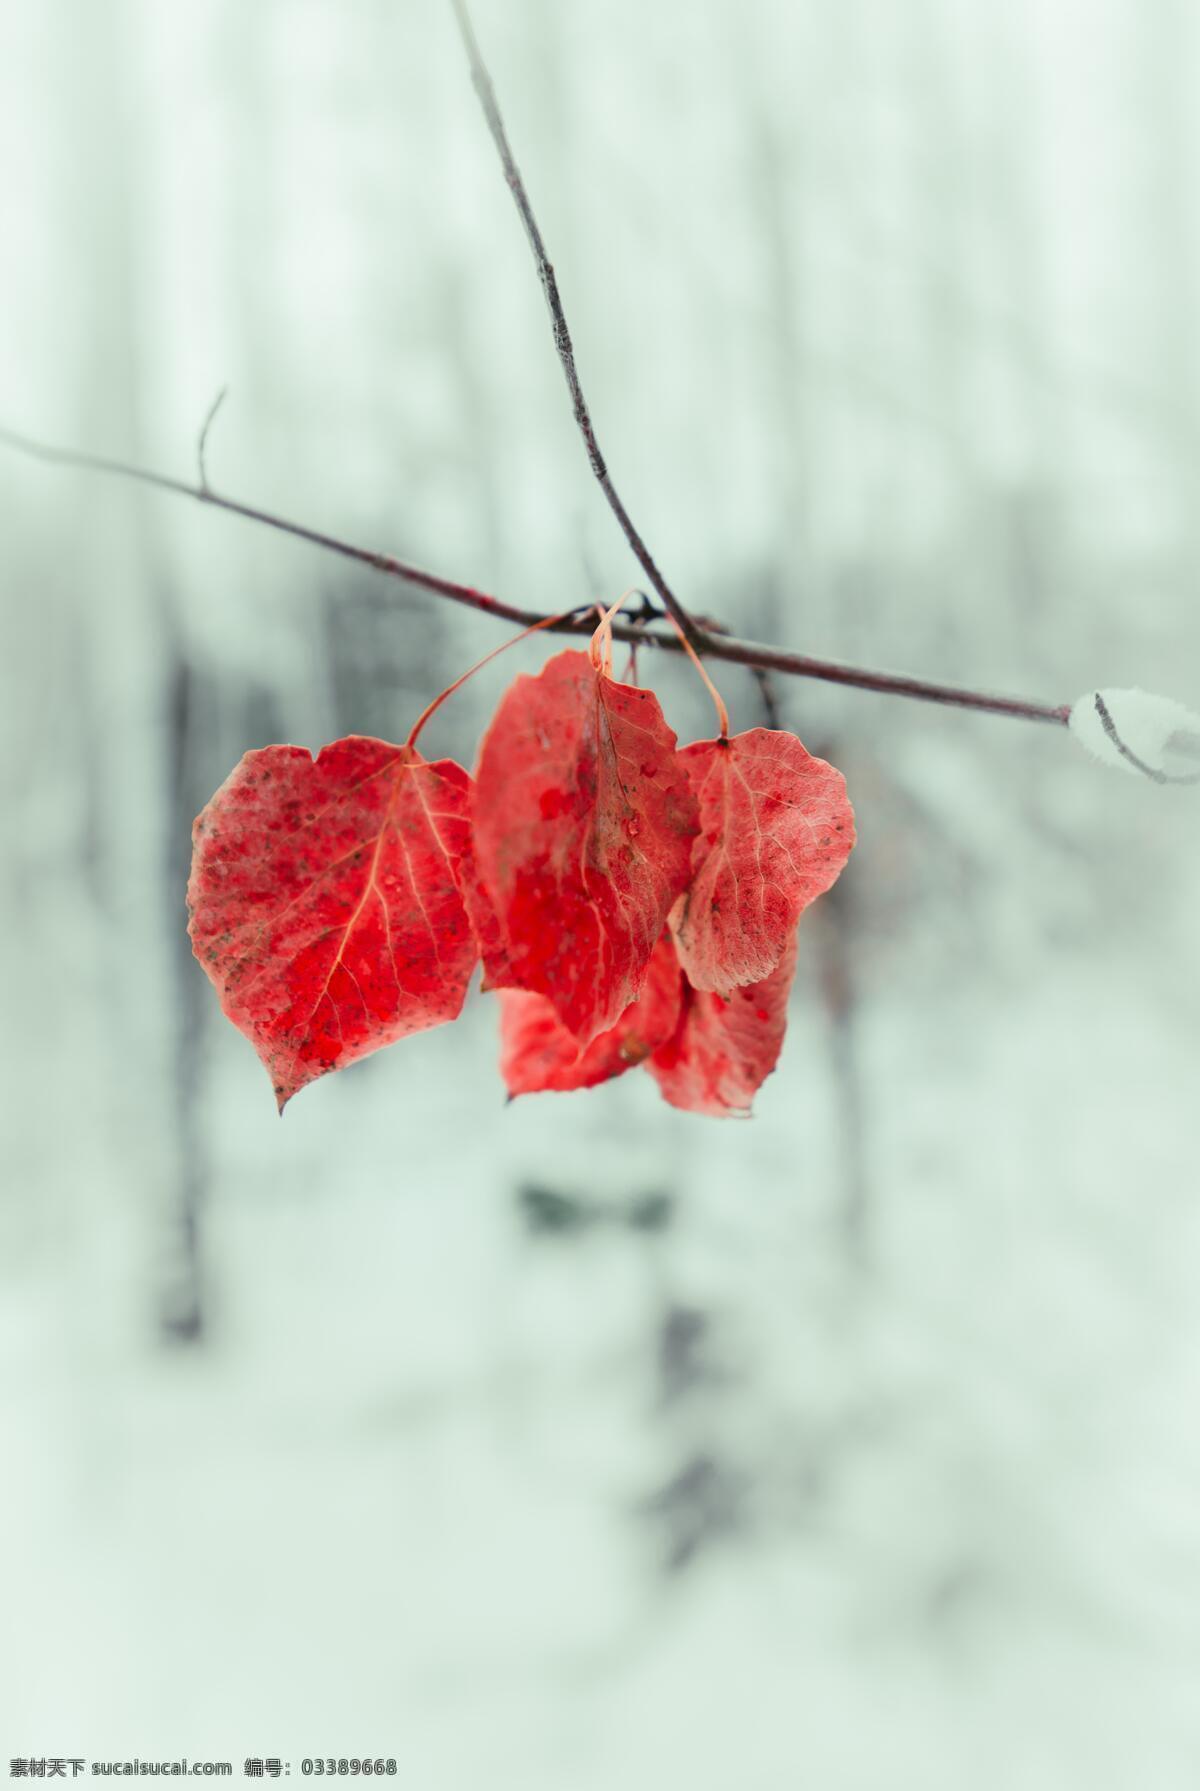 几朵红叶 红叶 霜叶 霜叶红于 二月花 叶子 叶片 秋天 凋零 唯美 文艺 清新 浪漫 特写 精致 精美 冬天 冬日 生物世界 树木树叶